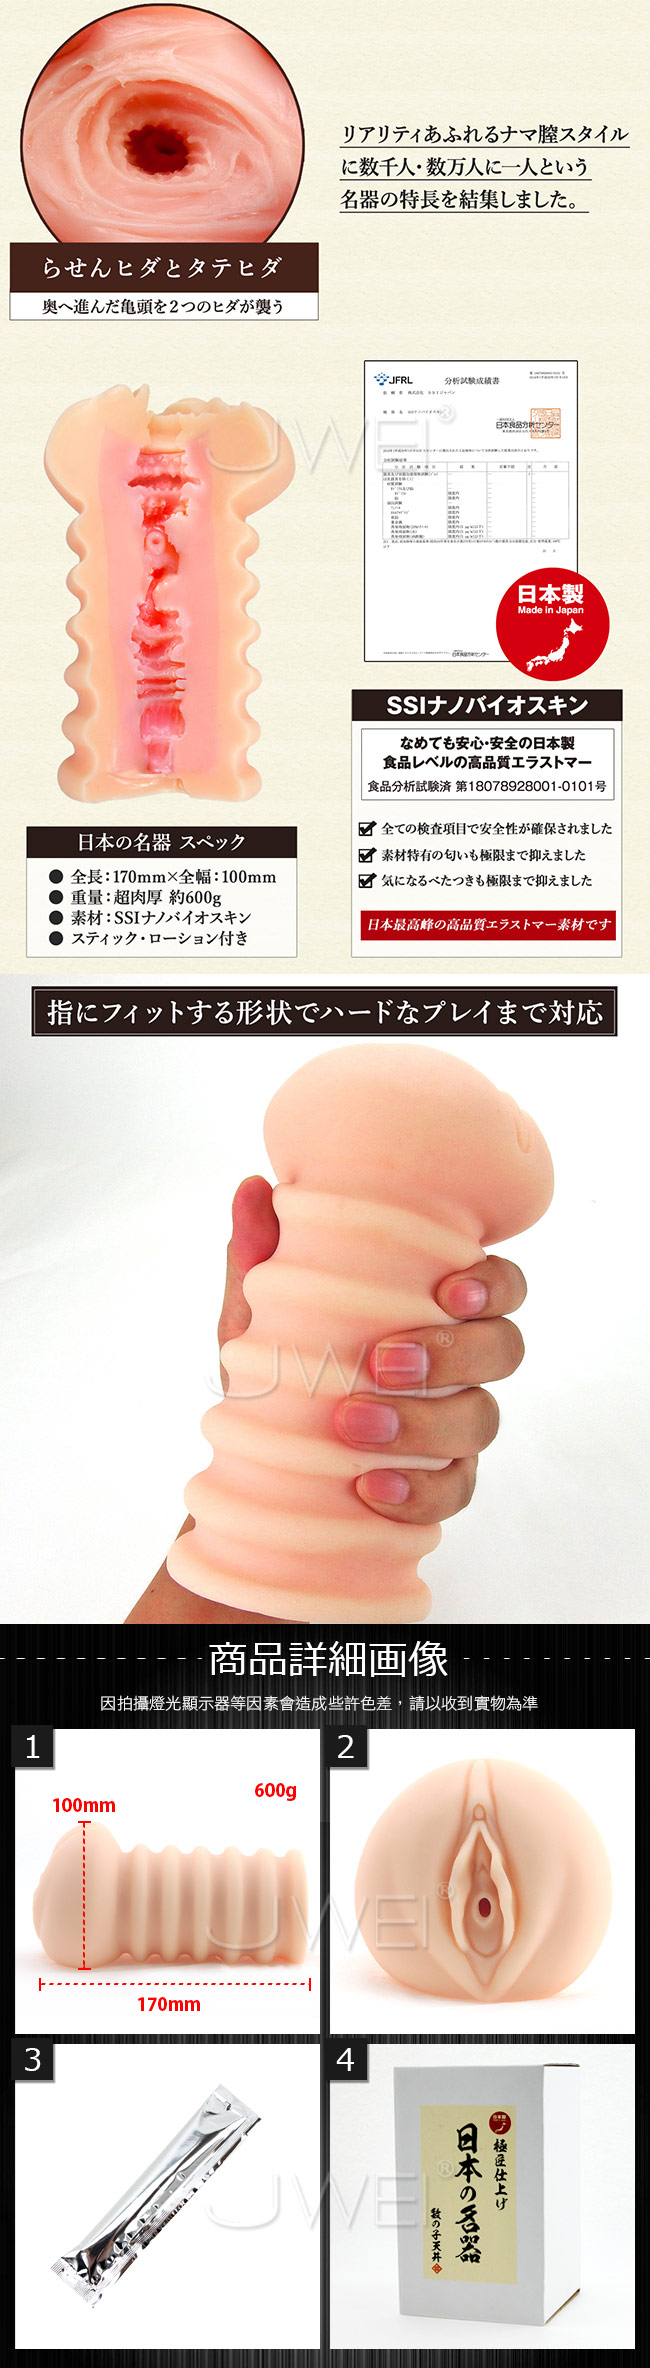 日本原裝進口SSI．日本の名器 肉厚膣道自慰名器-数の子天井